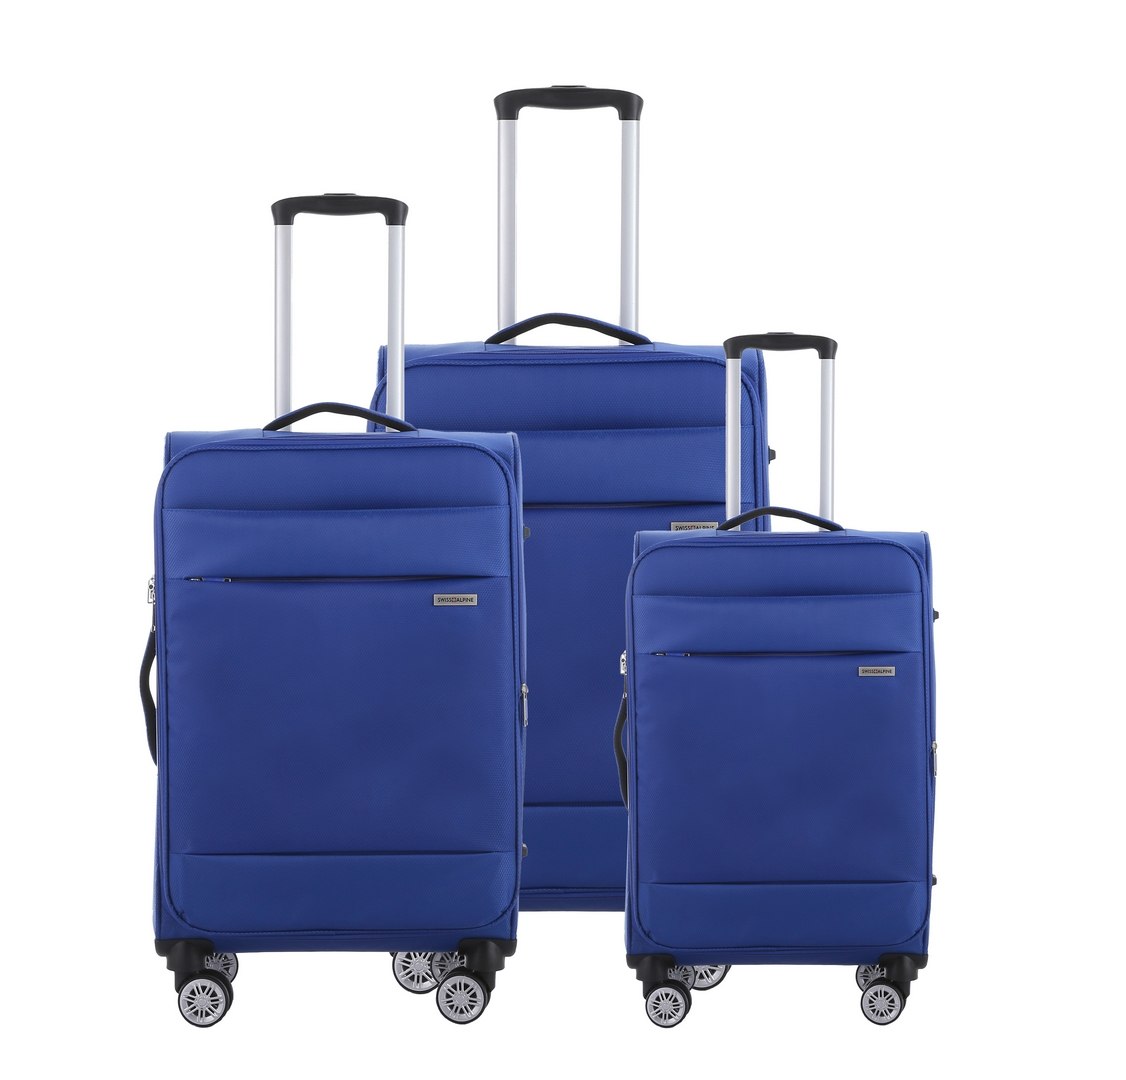 סט 3 מזוודות SWISS ALPINE בד קלות וסופר איכותיות - צבע כחול